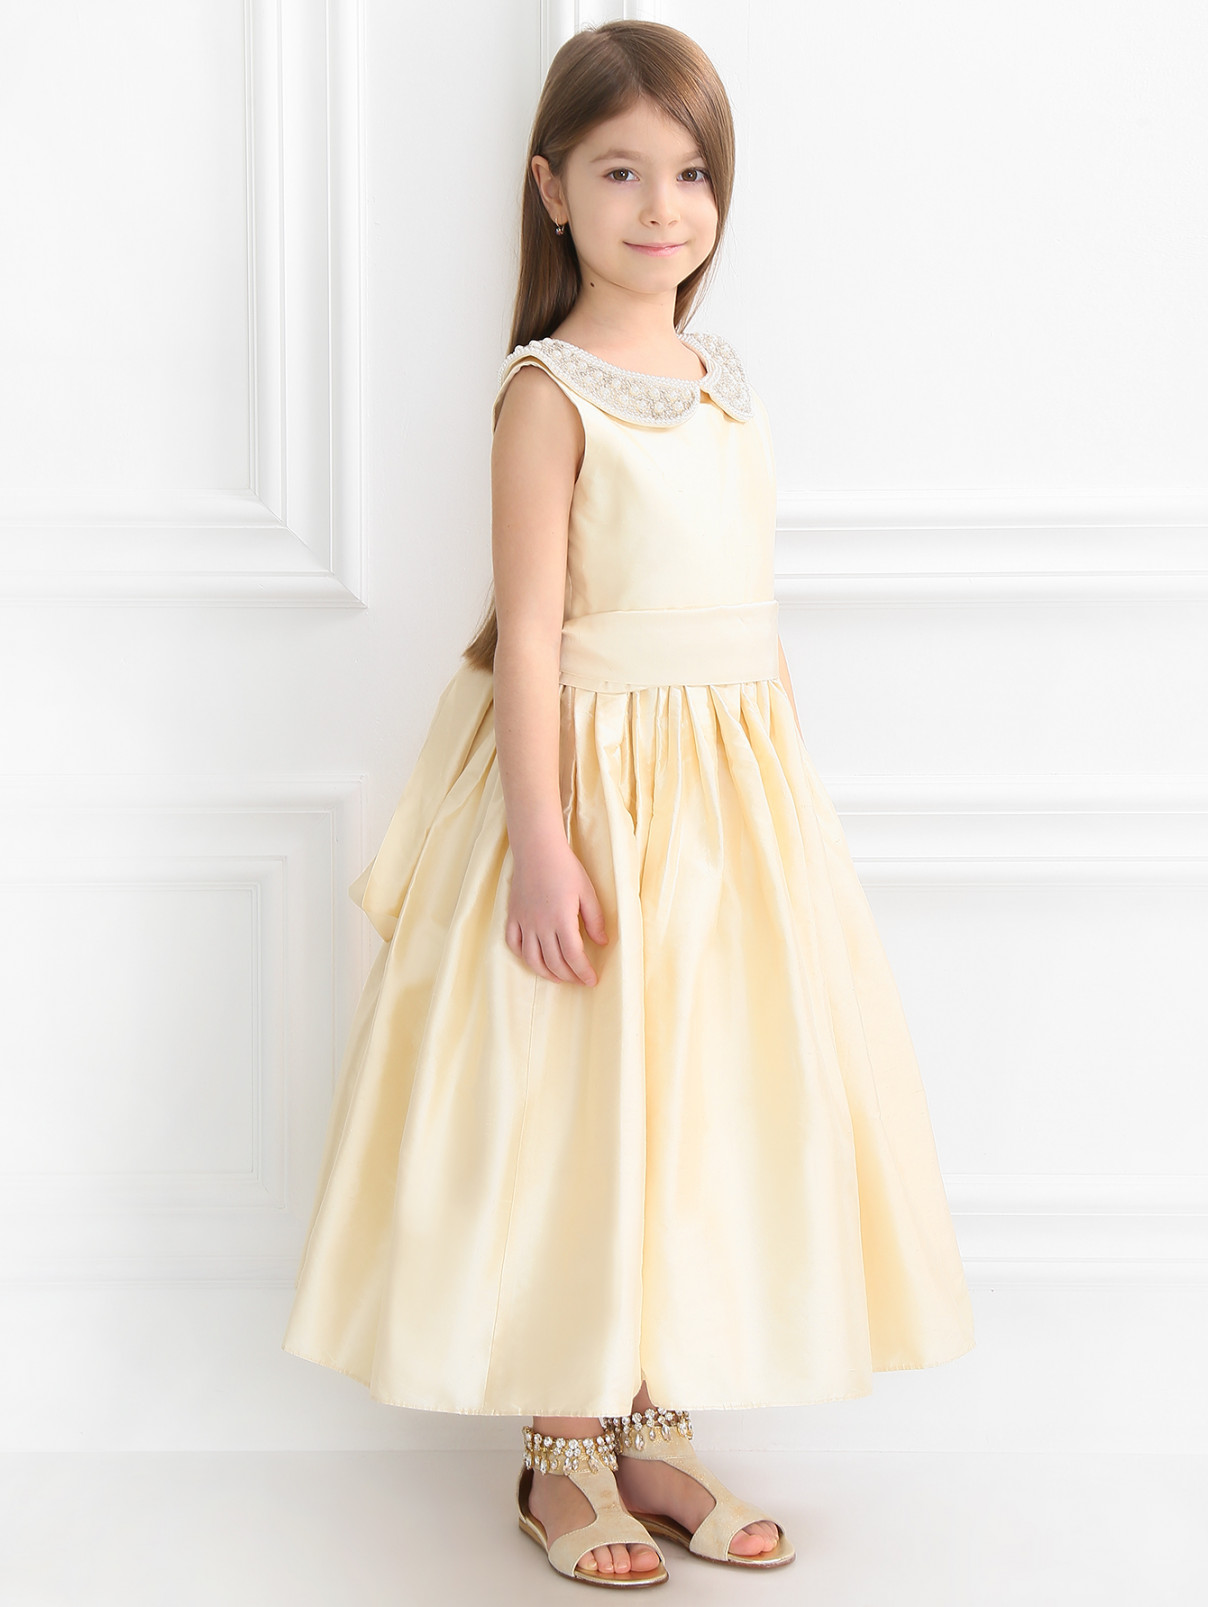 Платье из шелка с воротничком расшитым бусинами и бисером Nicki Macfarlane  –  Модель Общий вид  – Цвет:  Желтый